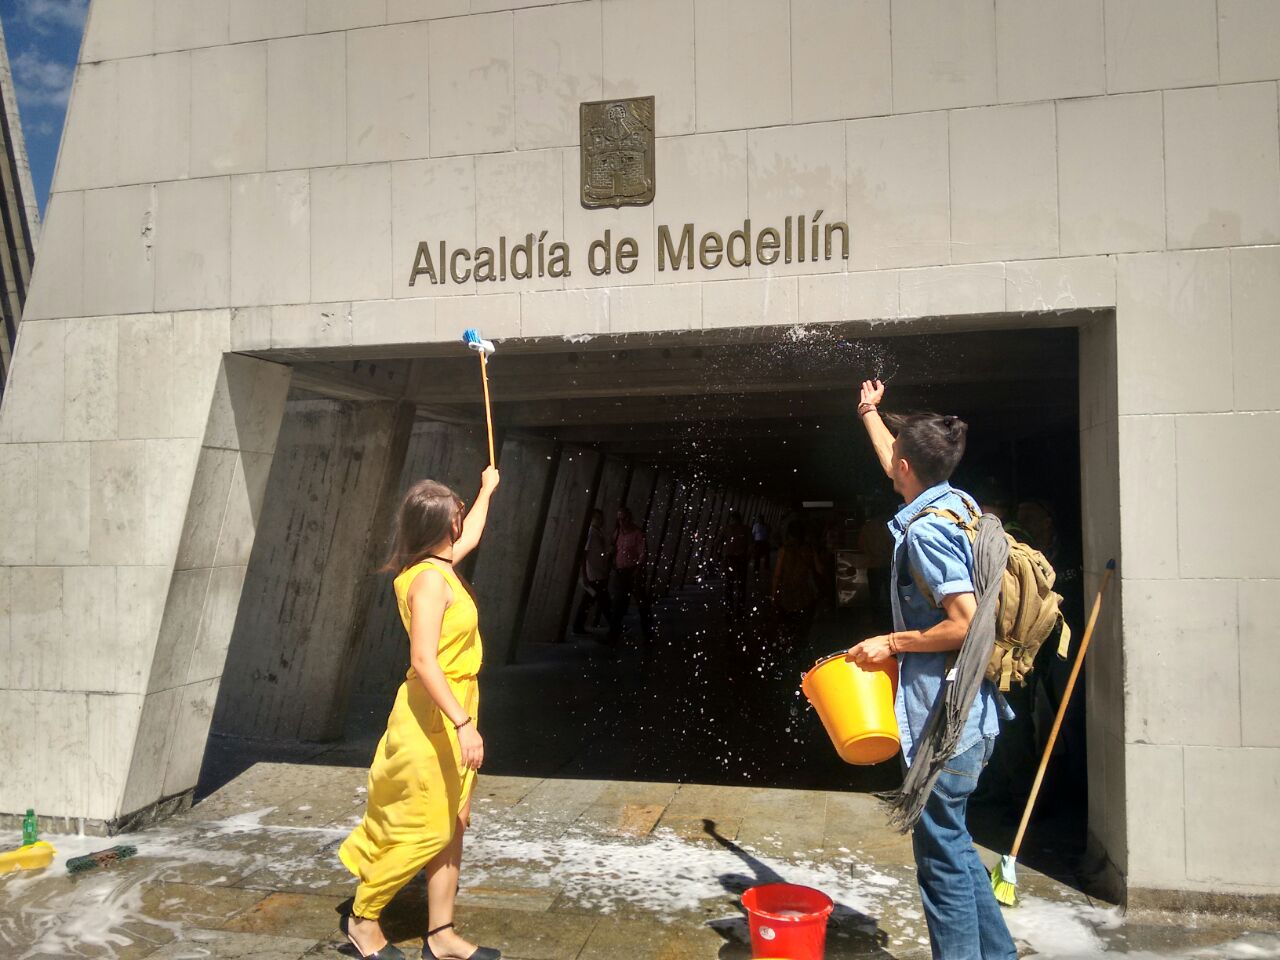 Ciudadanos dicen que la Alcaldía está ‘sucia’ y se reúnen a lavarla